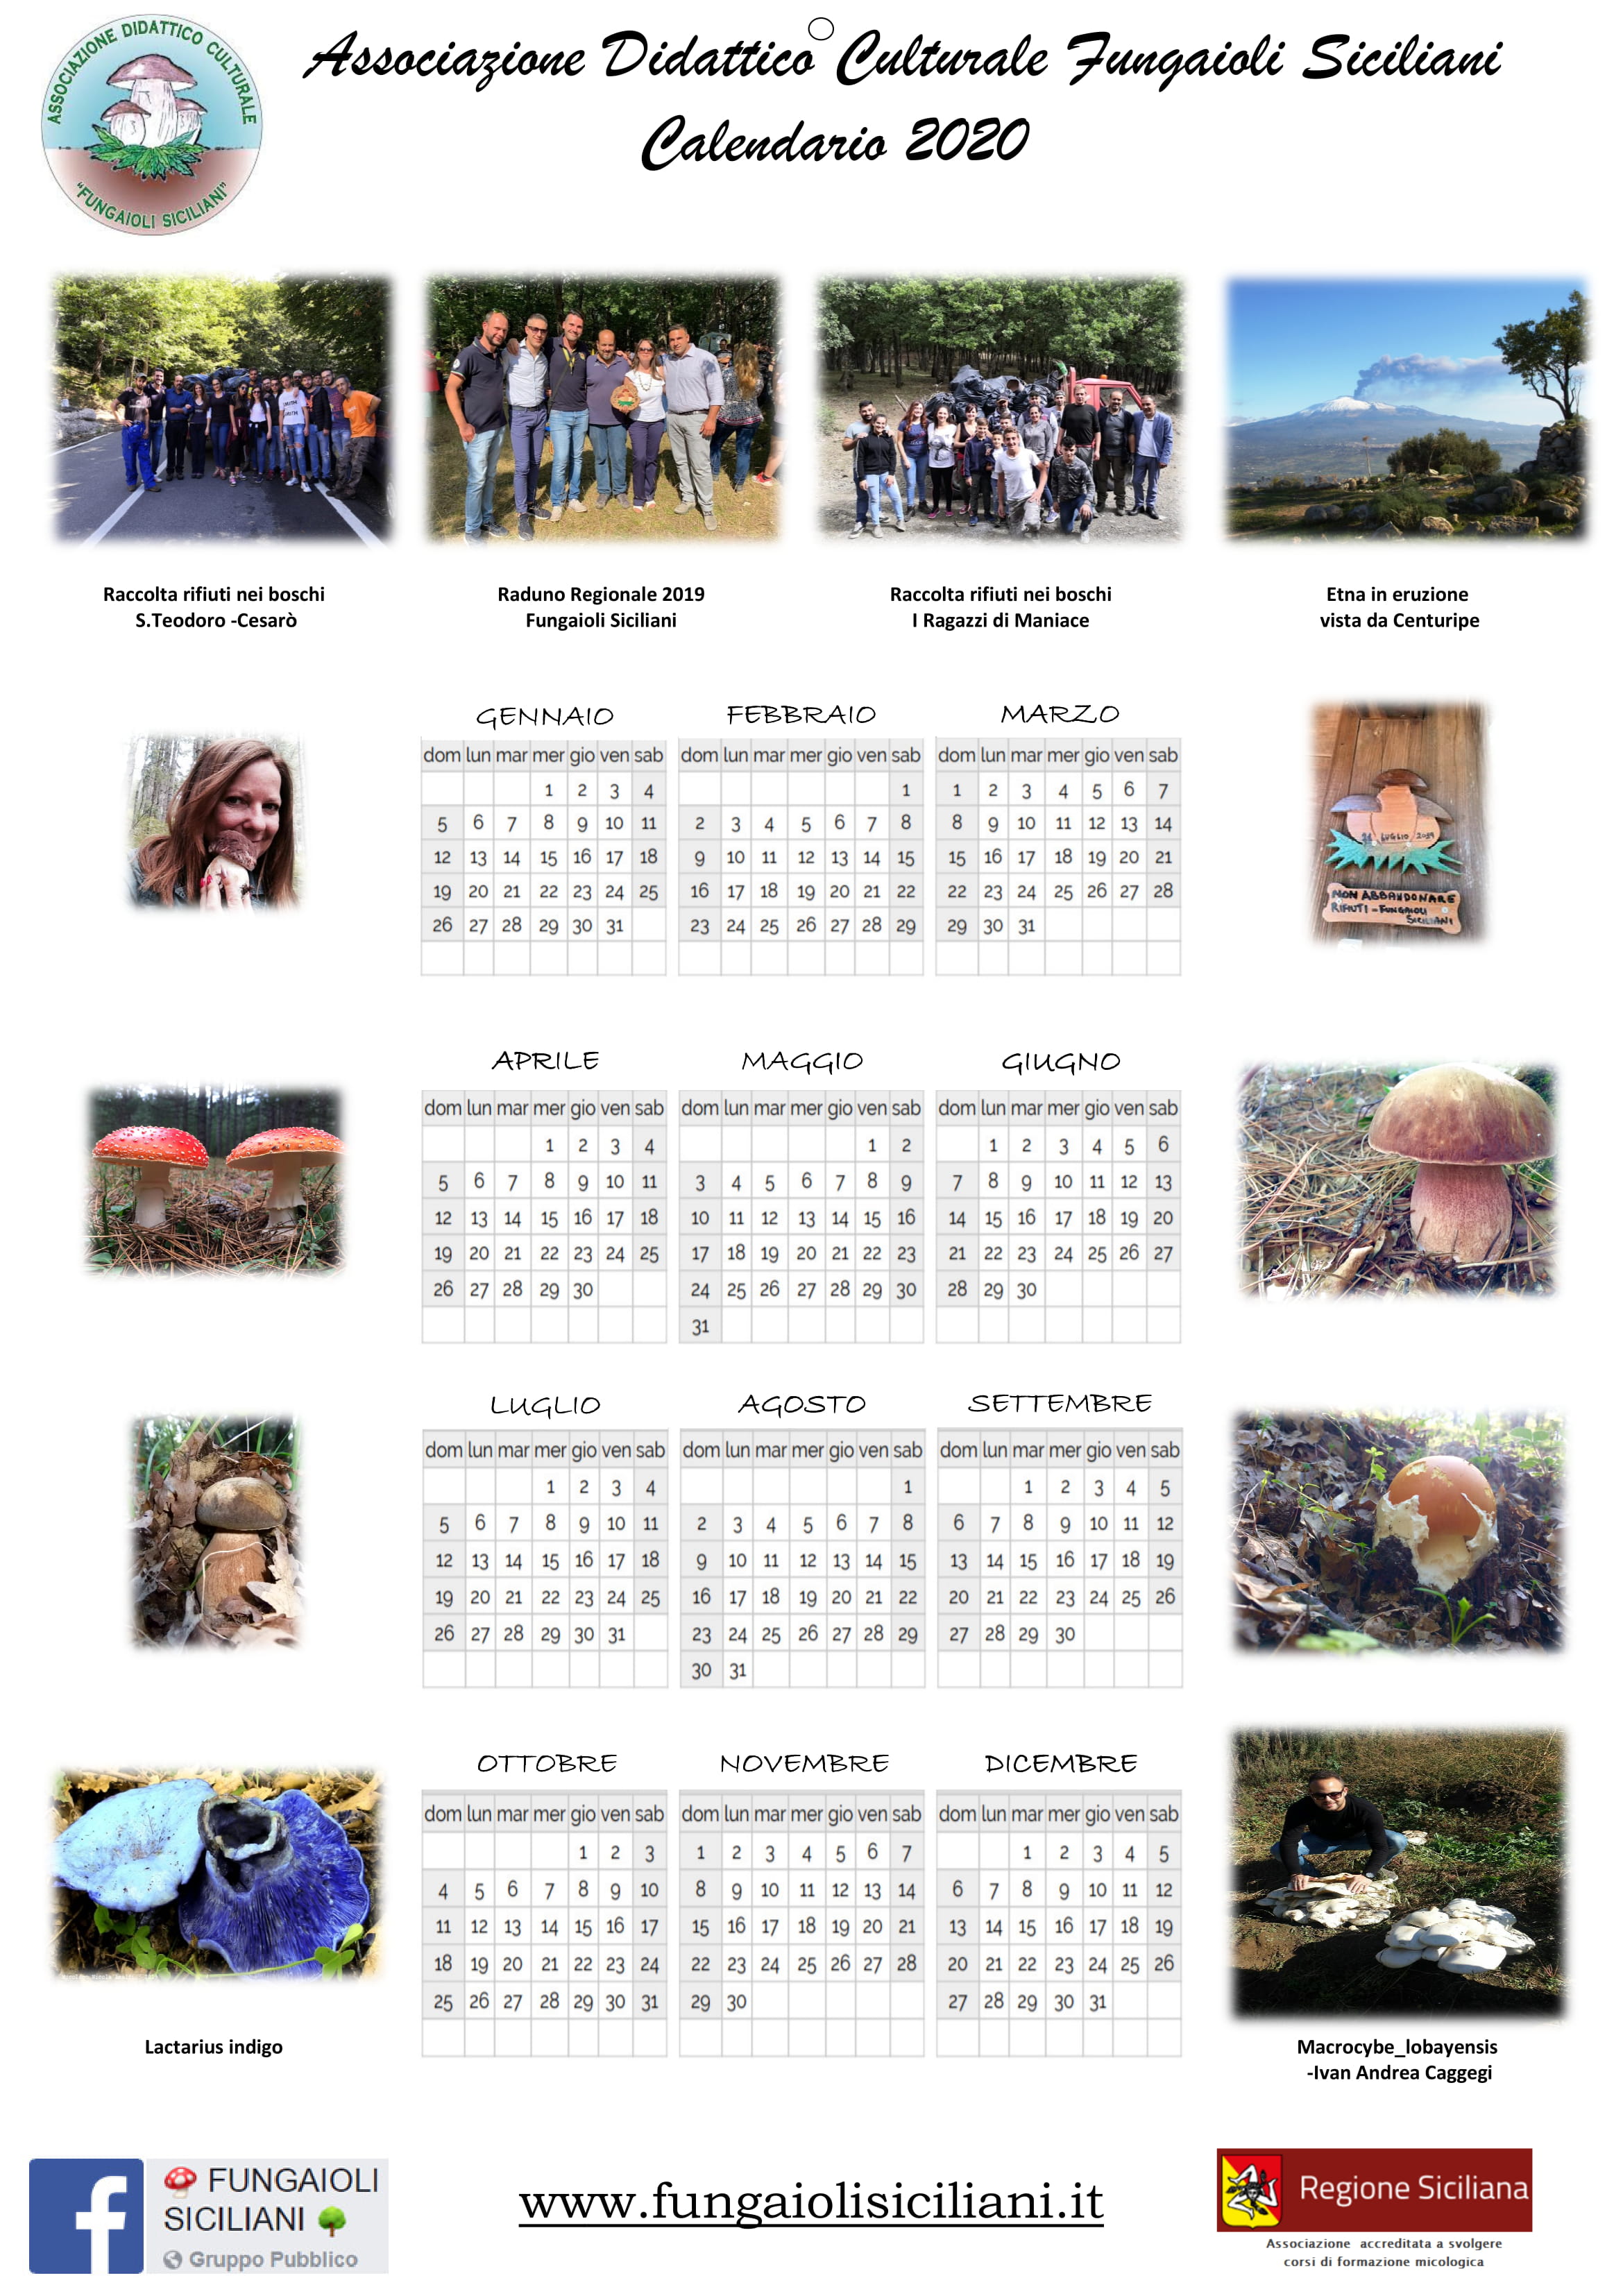 Calendario_2020_-_Rosita_Rugna-1.jpg - 878,23 kB